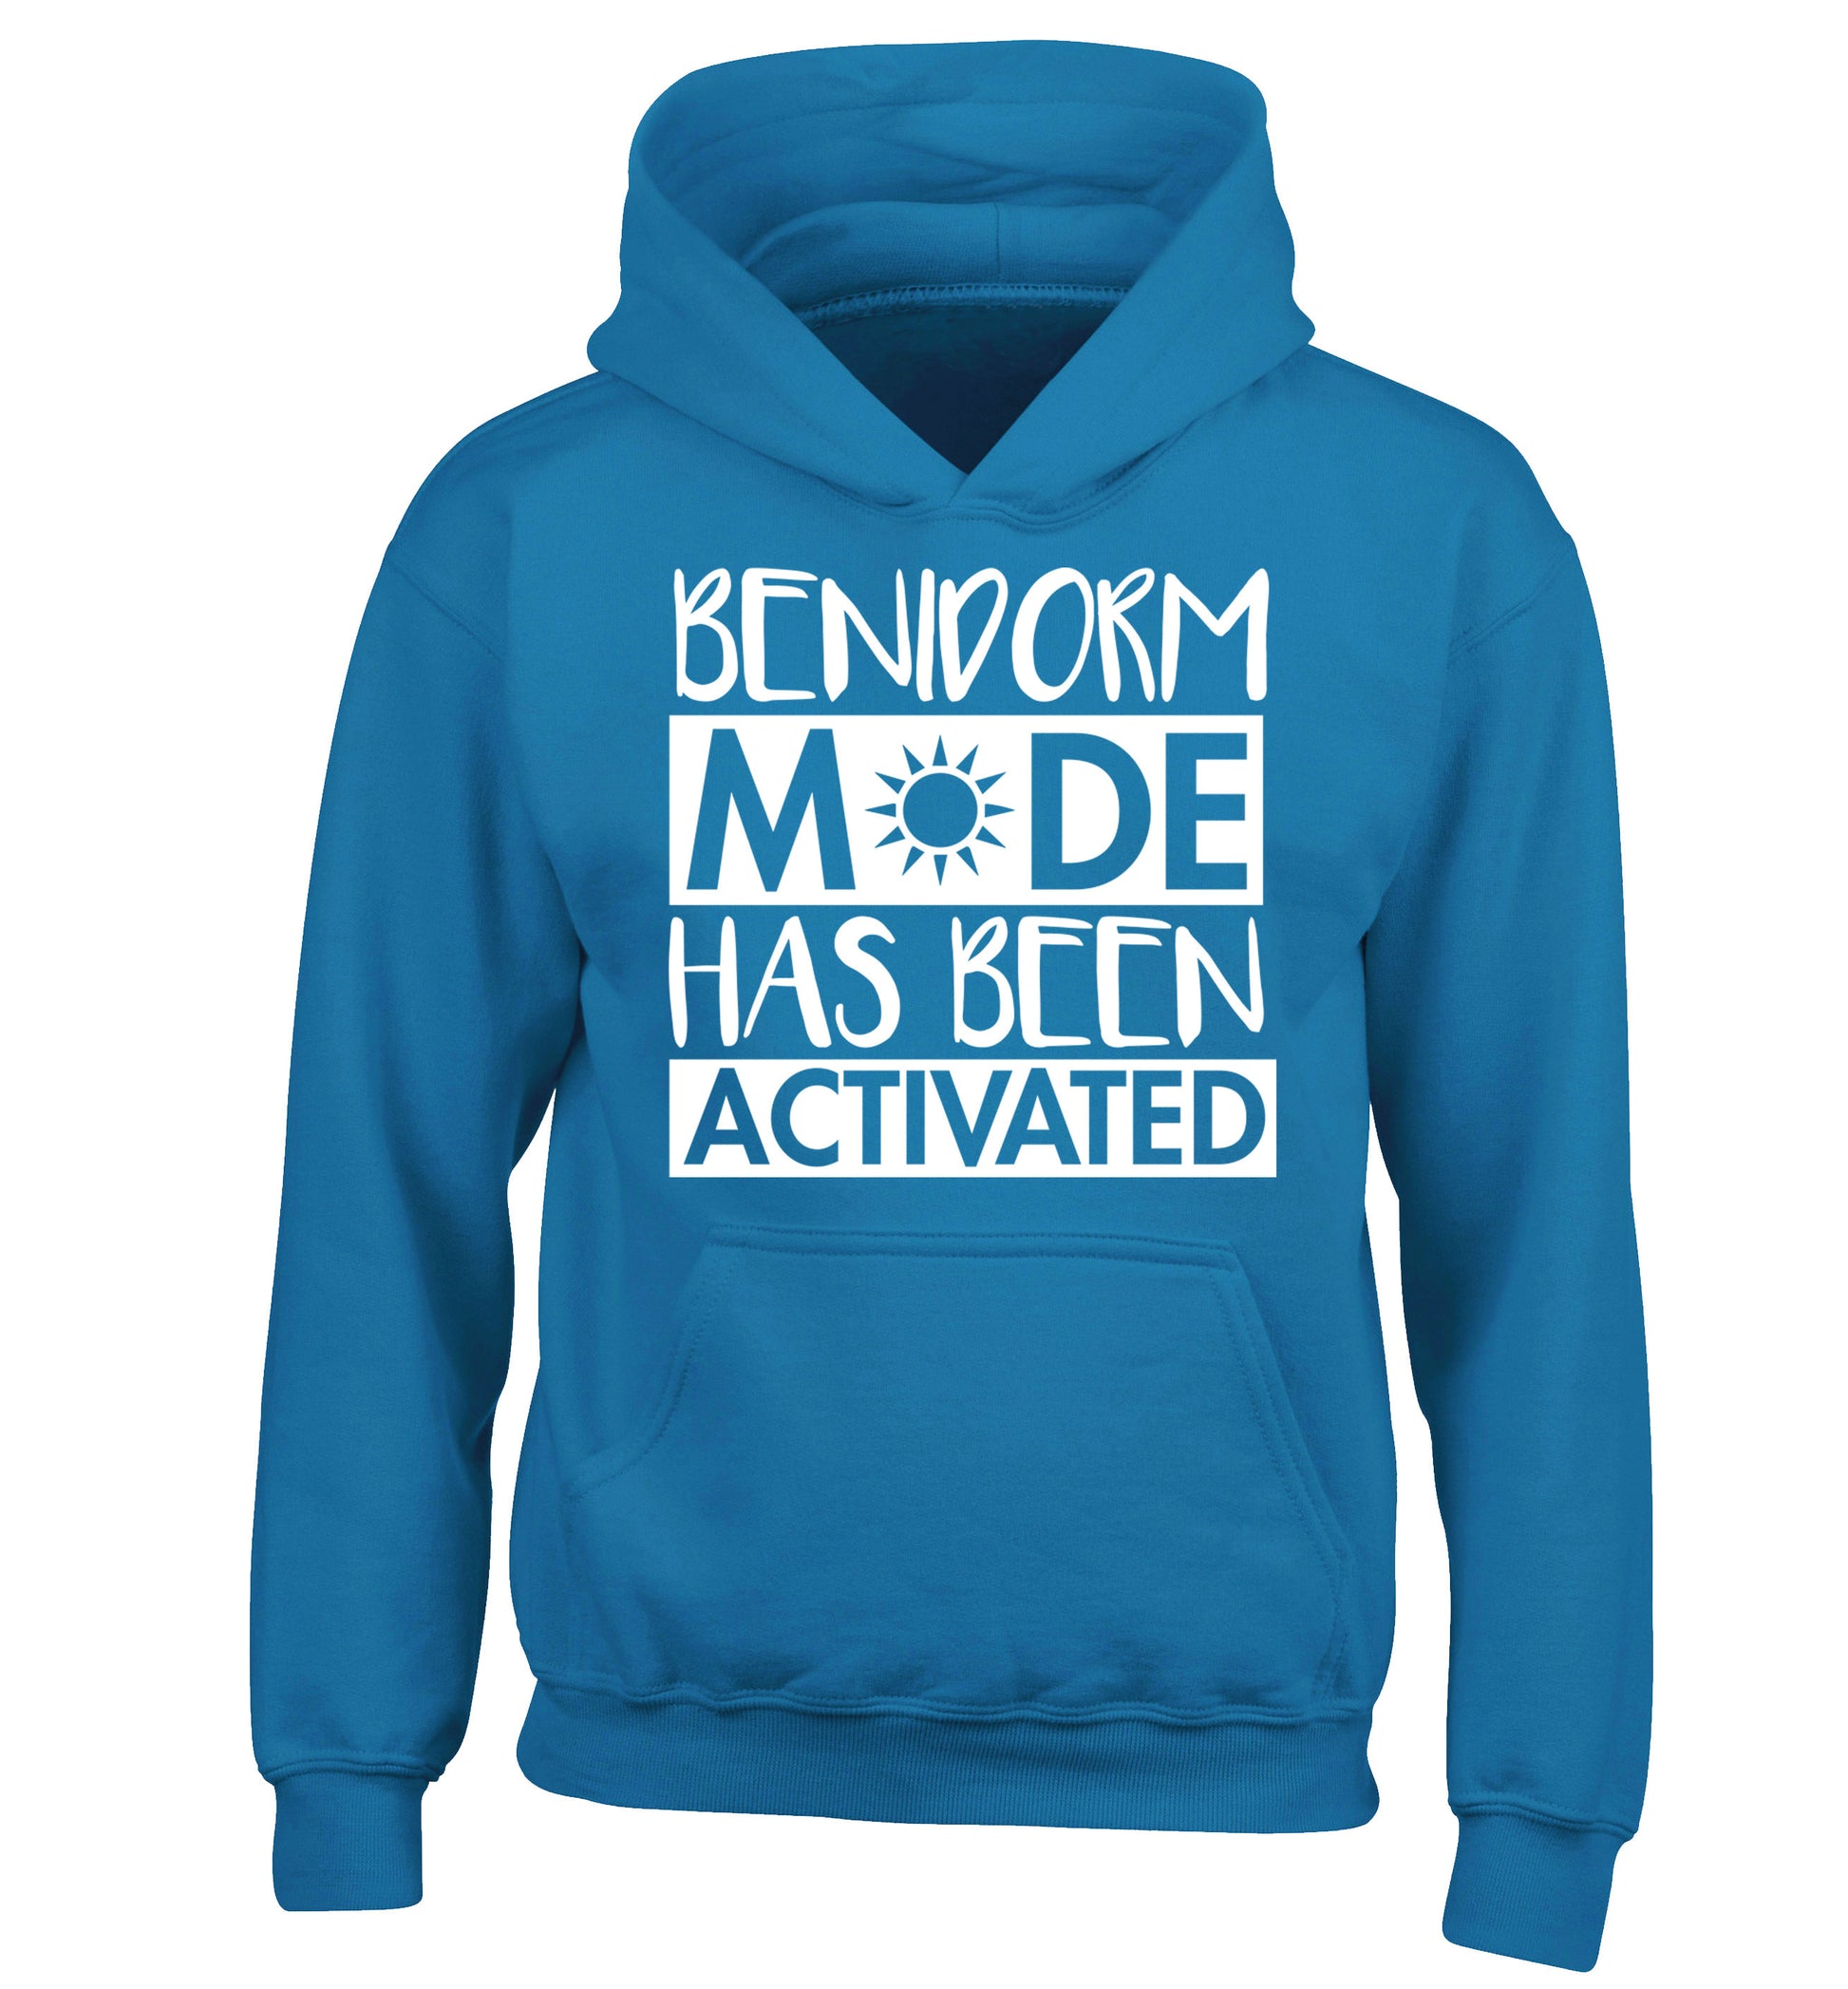 Benidorm mode has been activated children's blue hoodie 12-14 Years